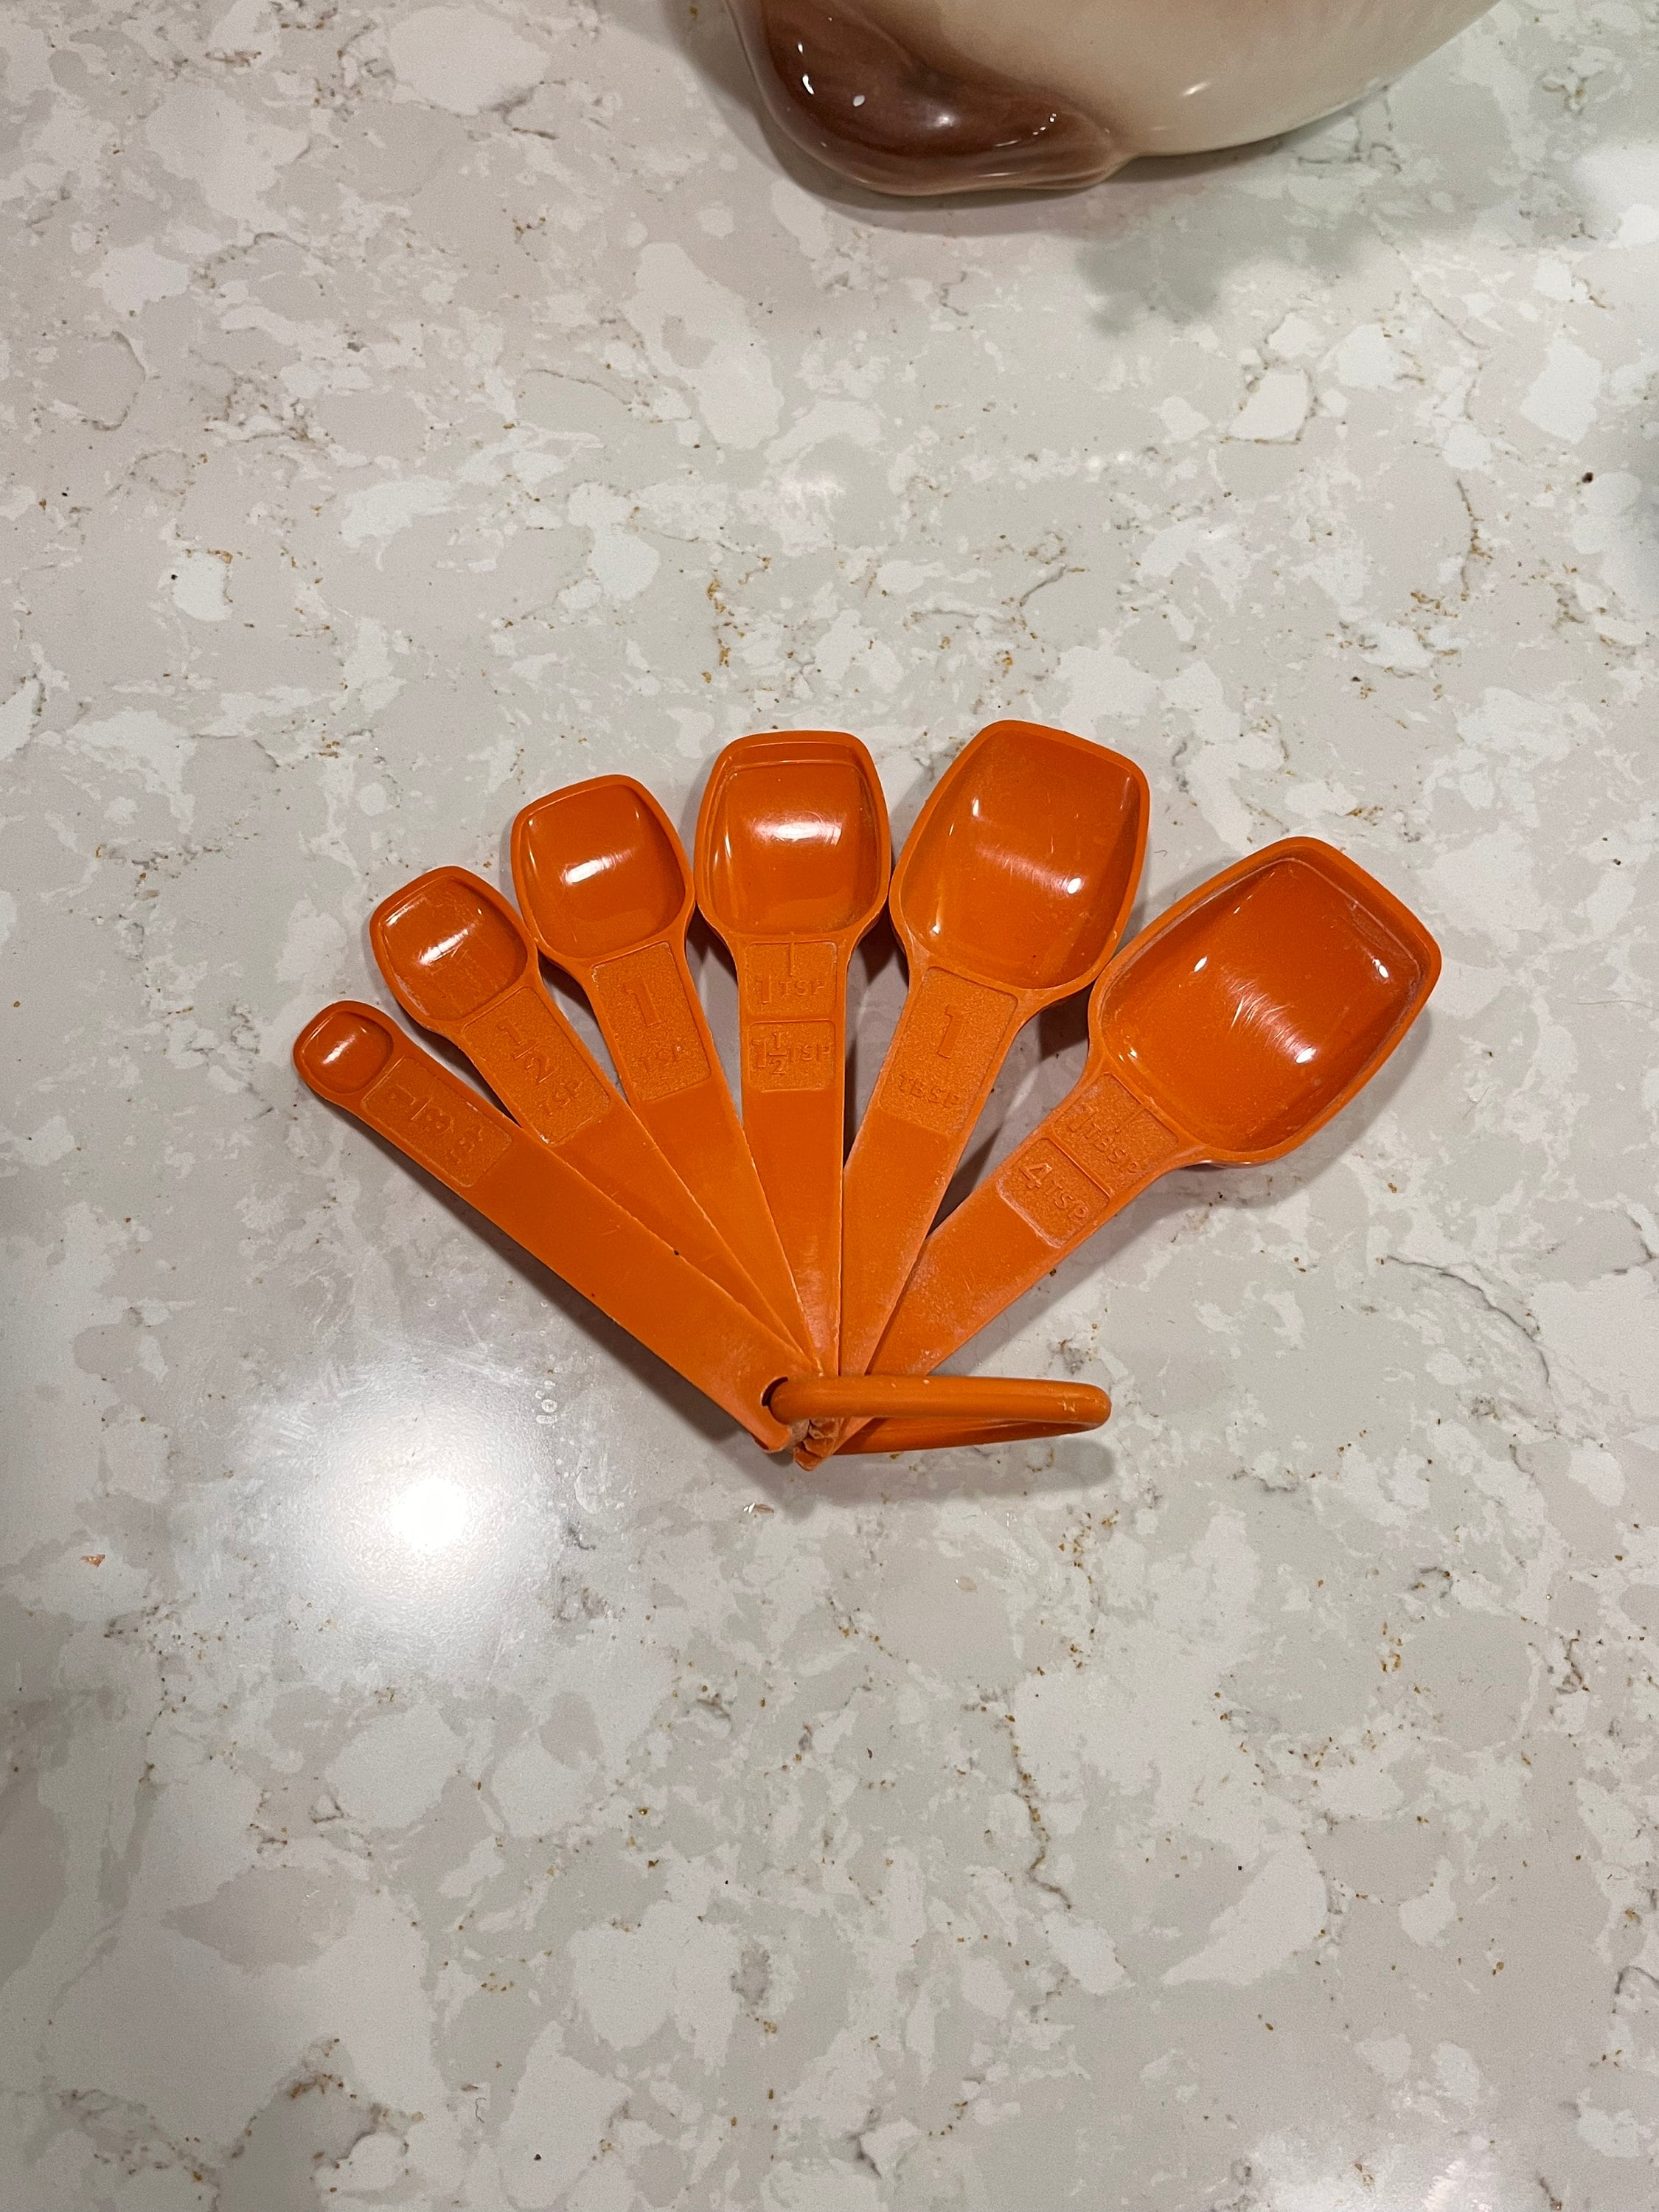 Tupperware Orange Measuring Spoons Complete Set of 7 Vintage 